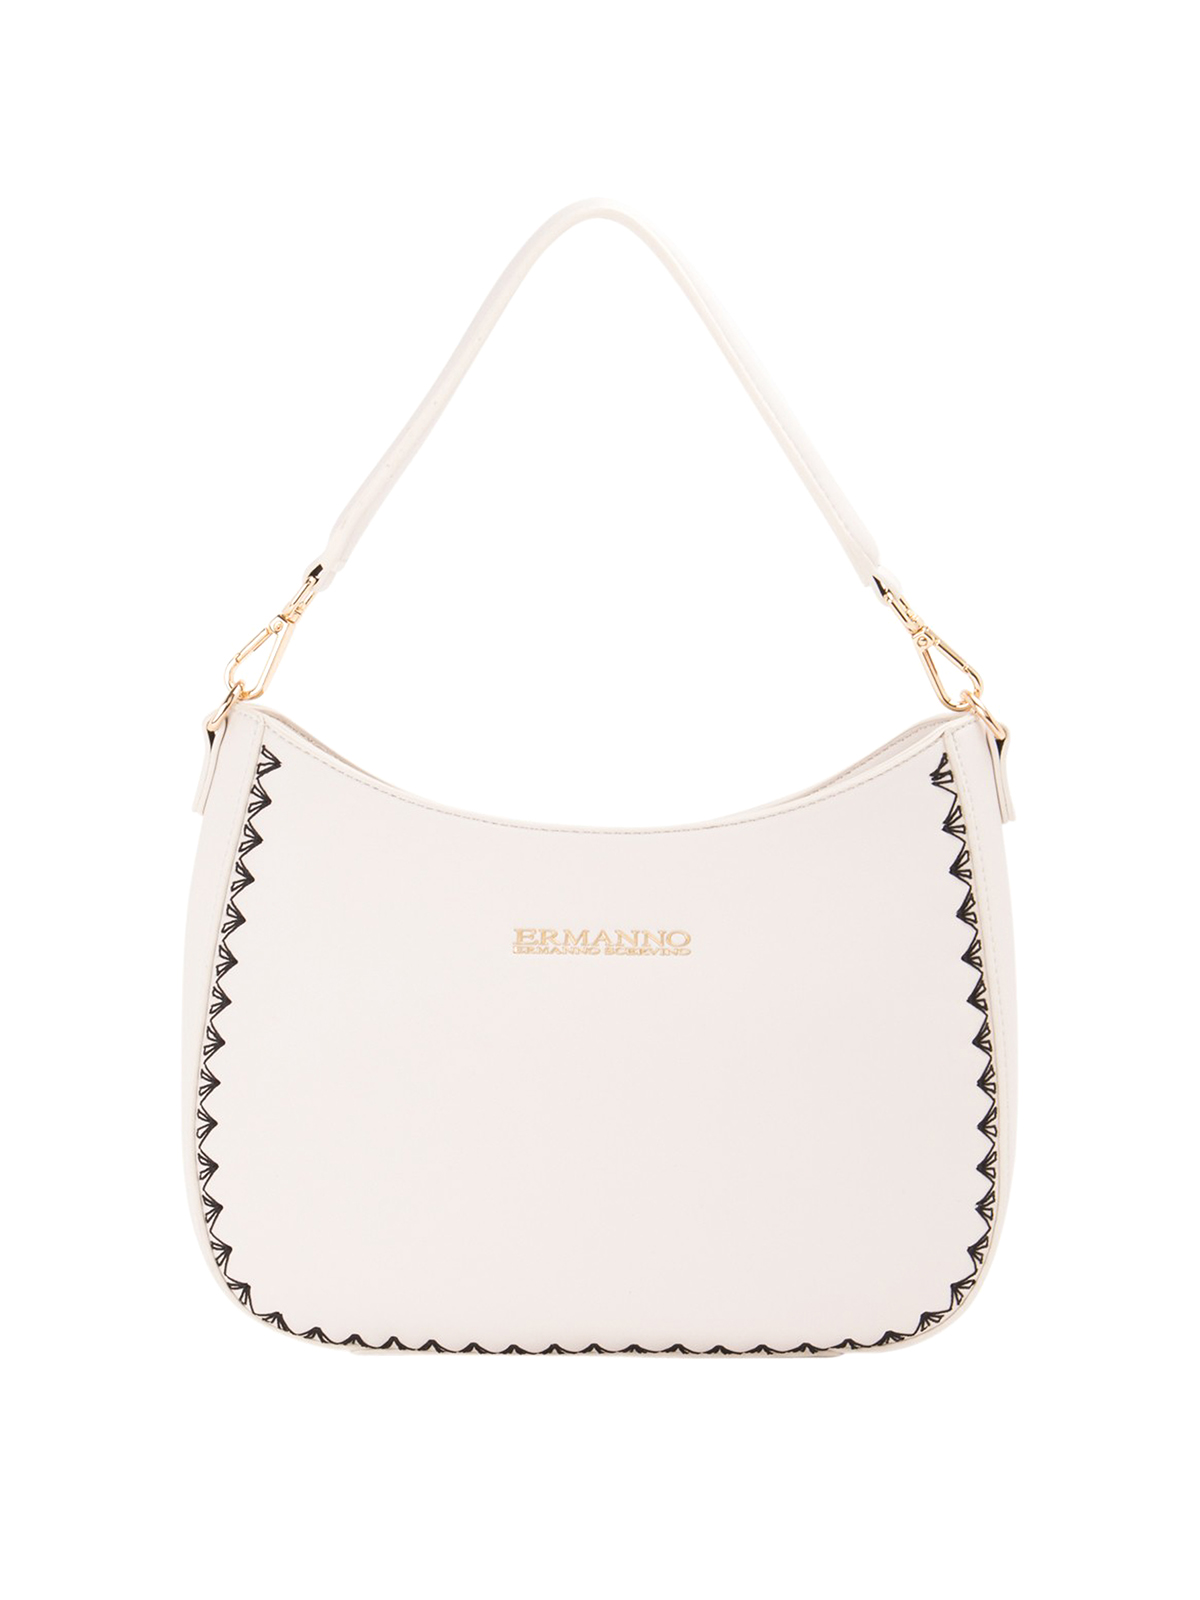 Ermanno By Ermanno Scervino Shoulder Bag In White